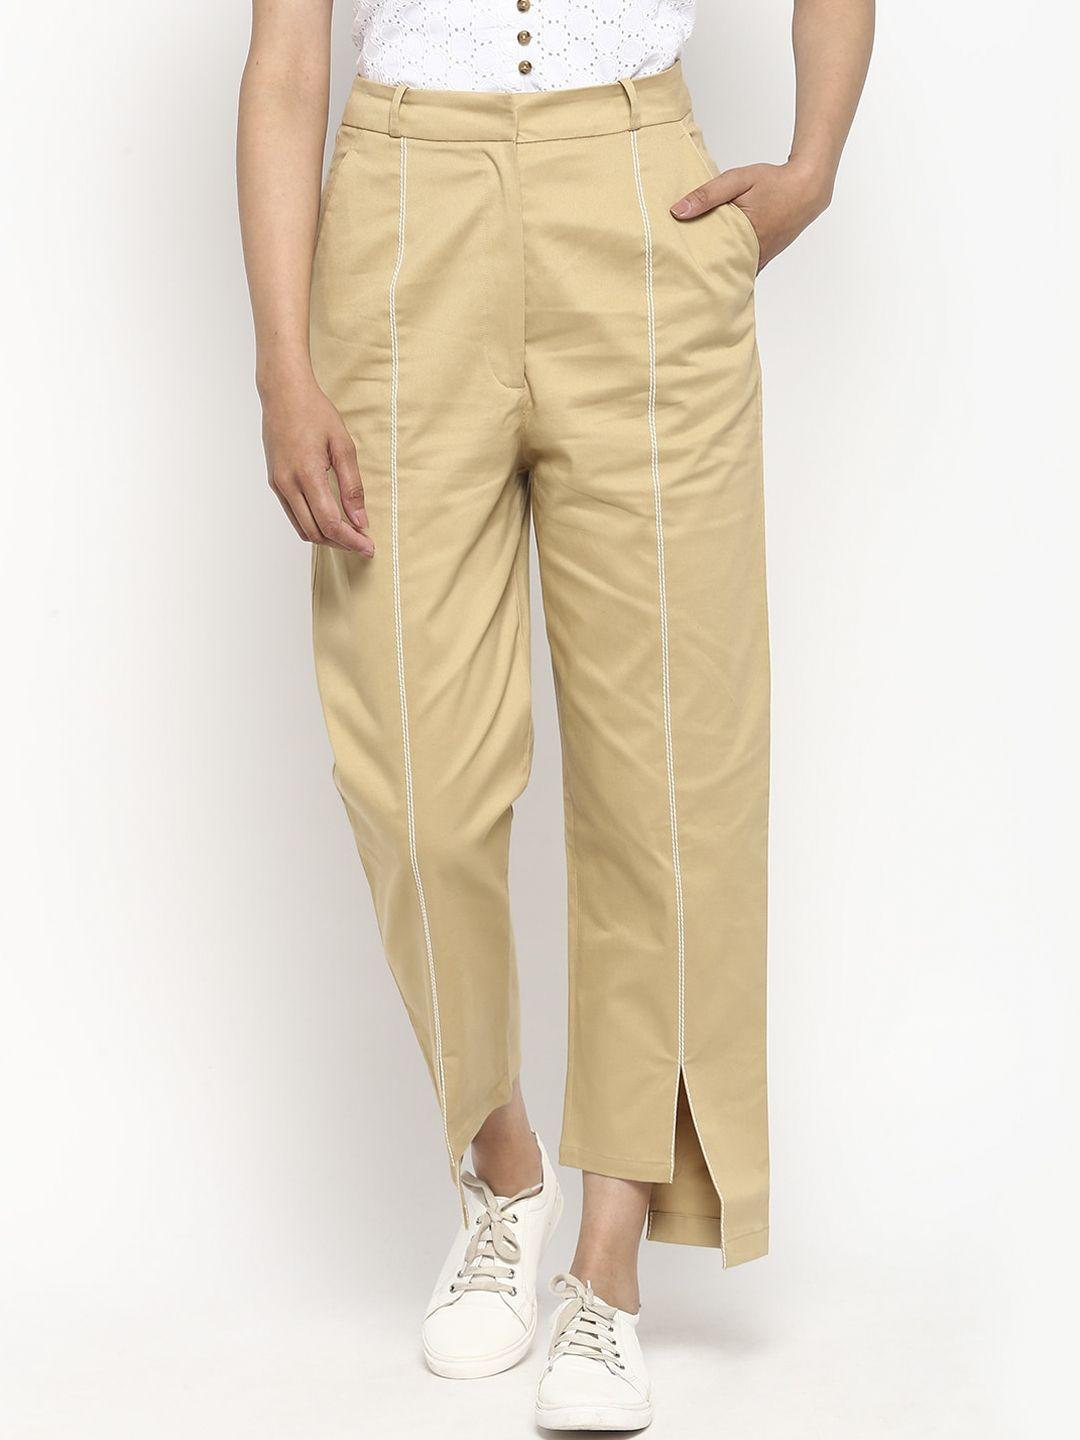 deebaco women beige striped loose fit pleated trousers